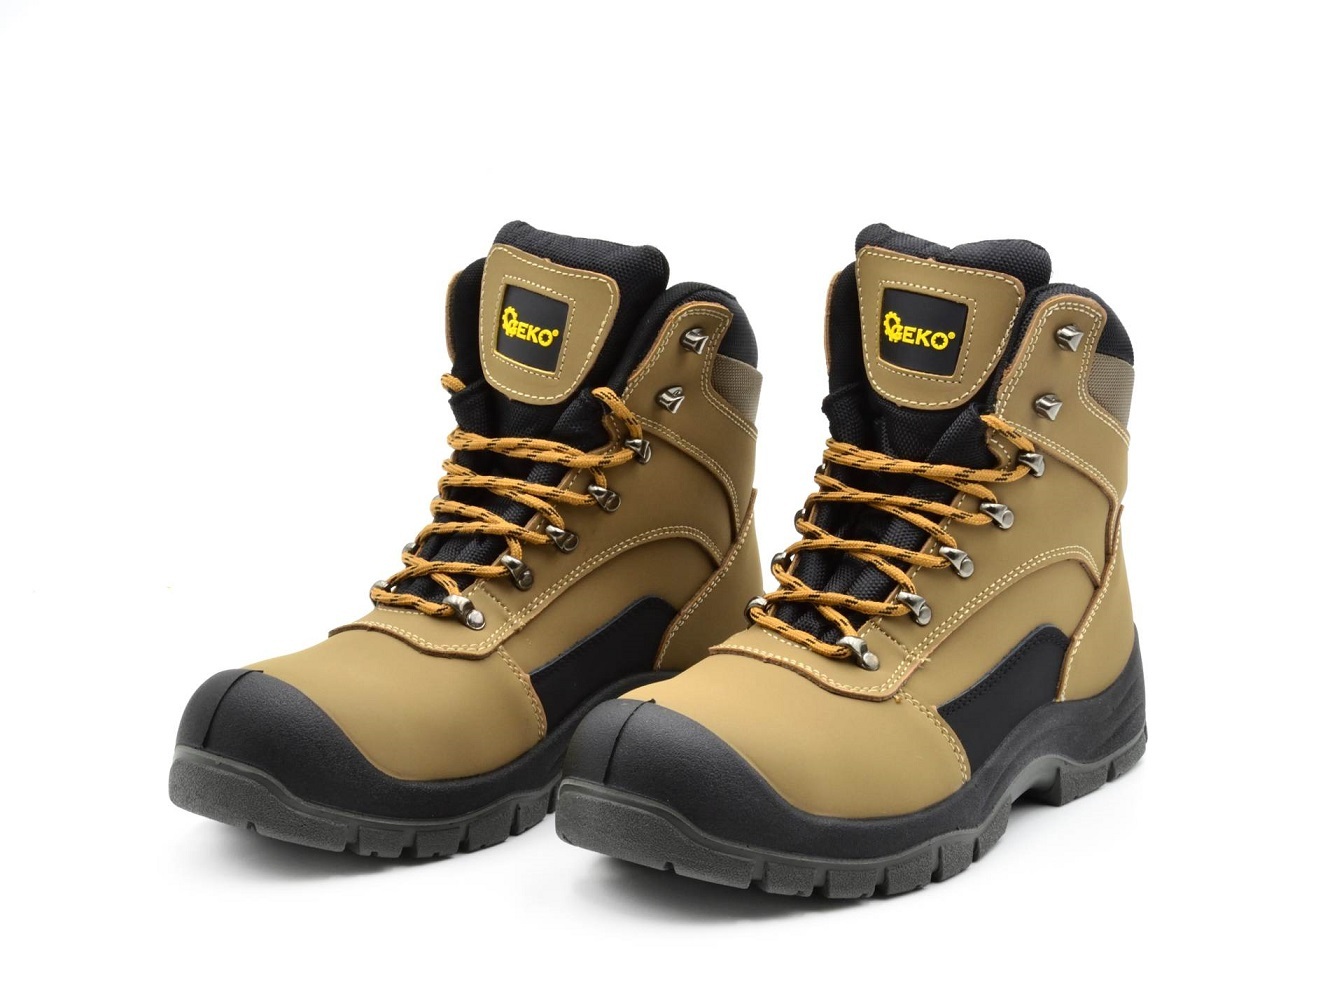 Ochranné pracovní boty velikost 45 GEKO nářadí G90541-45 + Dárek, servis bez starostí v hodnotě 300Kč